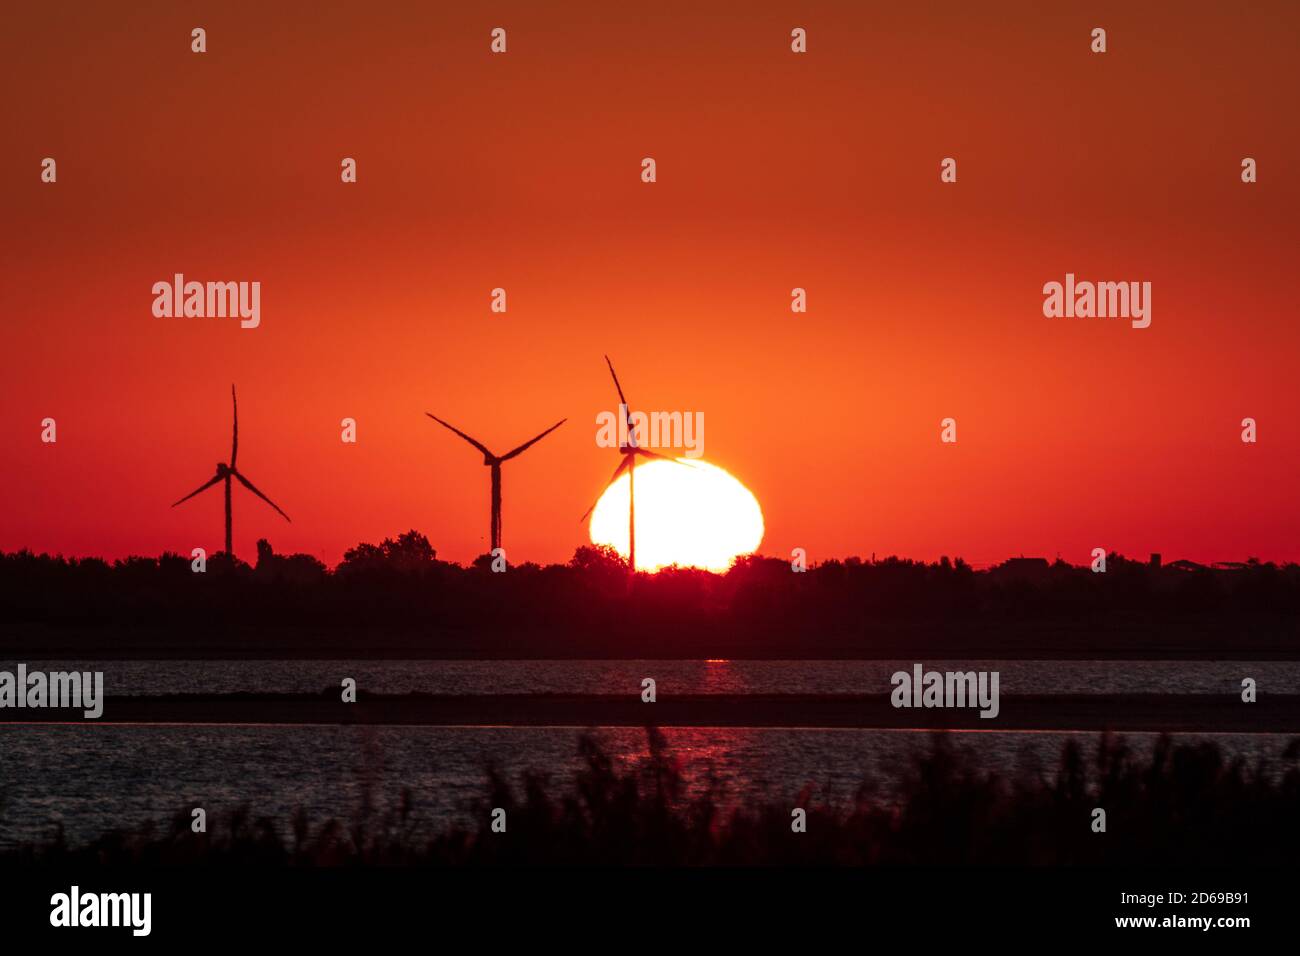 Generadores de viento granja silueta en la costa del mar en el amanecer rojo naranja vibrante cielo y el gran sol en ascenso. Turbinas de energía industria sostenible Foto de stock